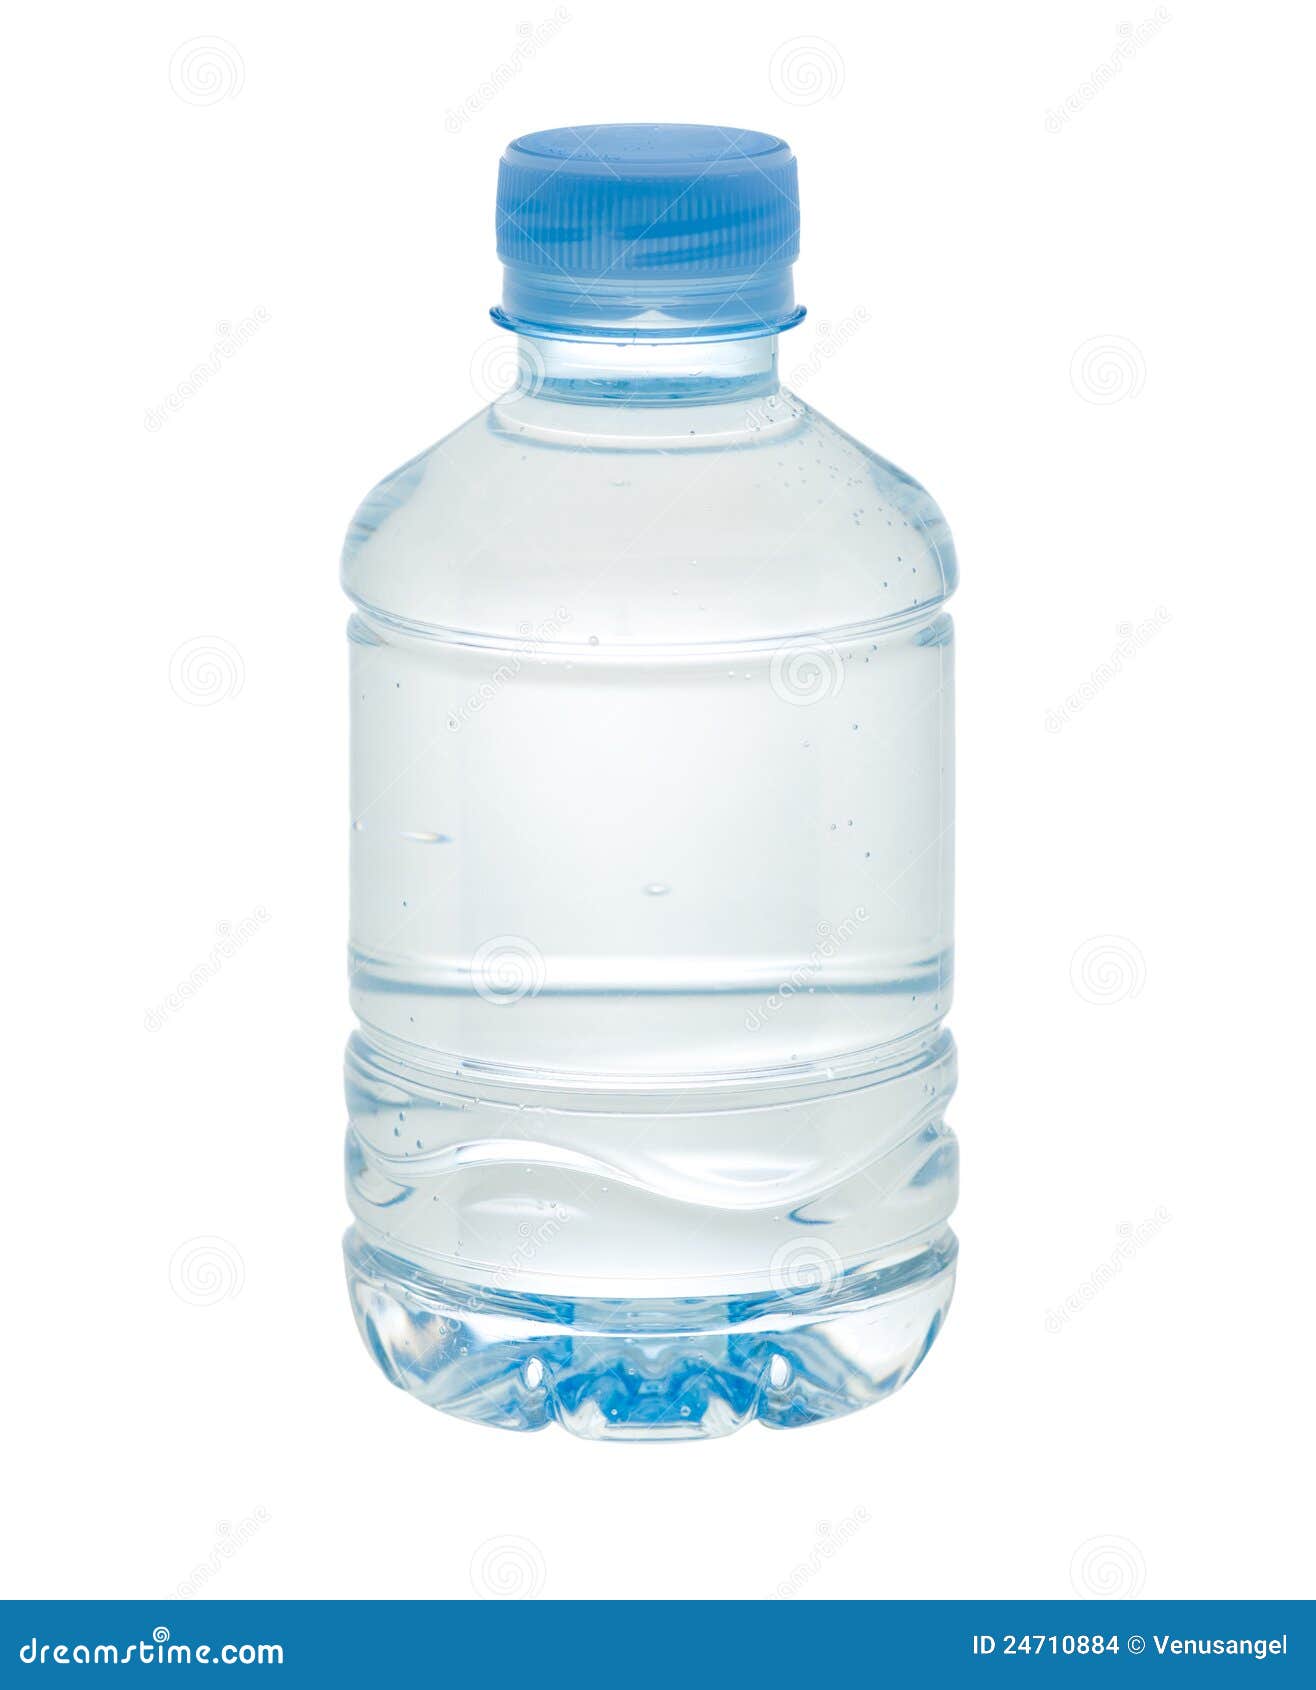 52,142 en la categoría «Botella agua pequeña» de imágenes, fotos de stock e  ilustraciones libres de regalías